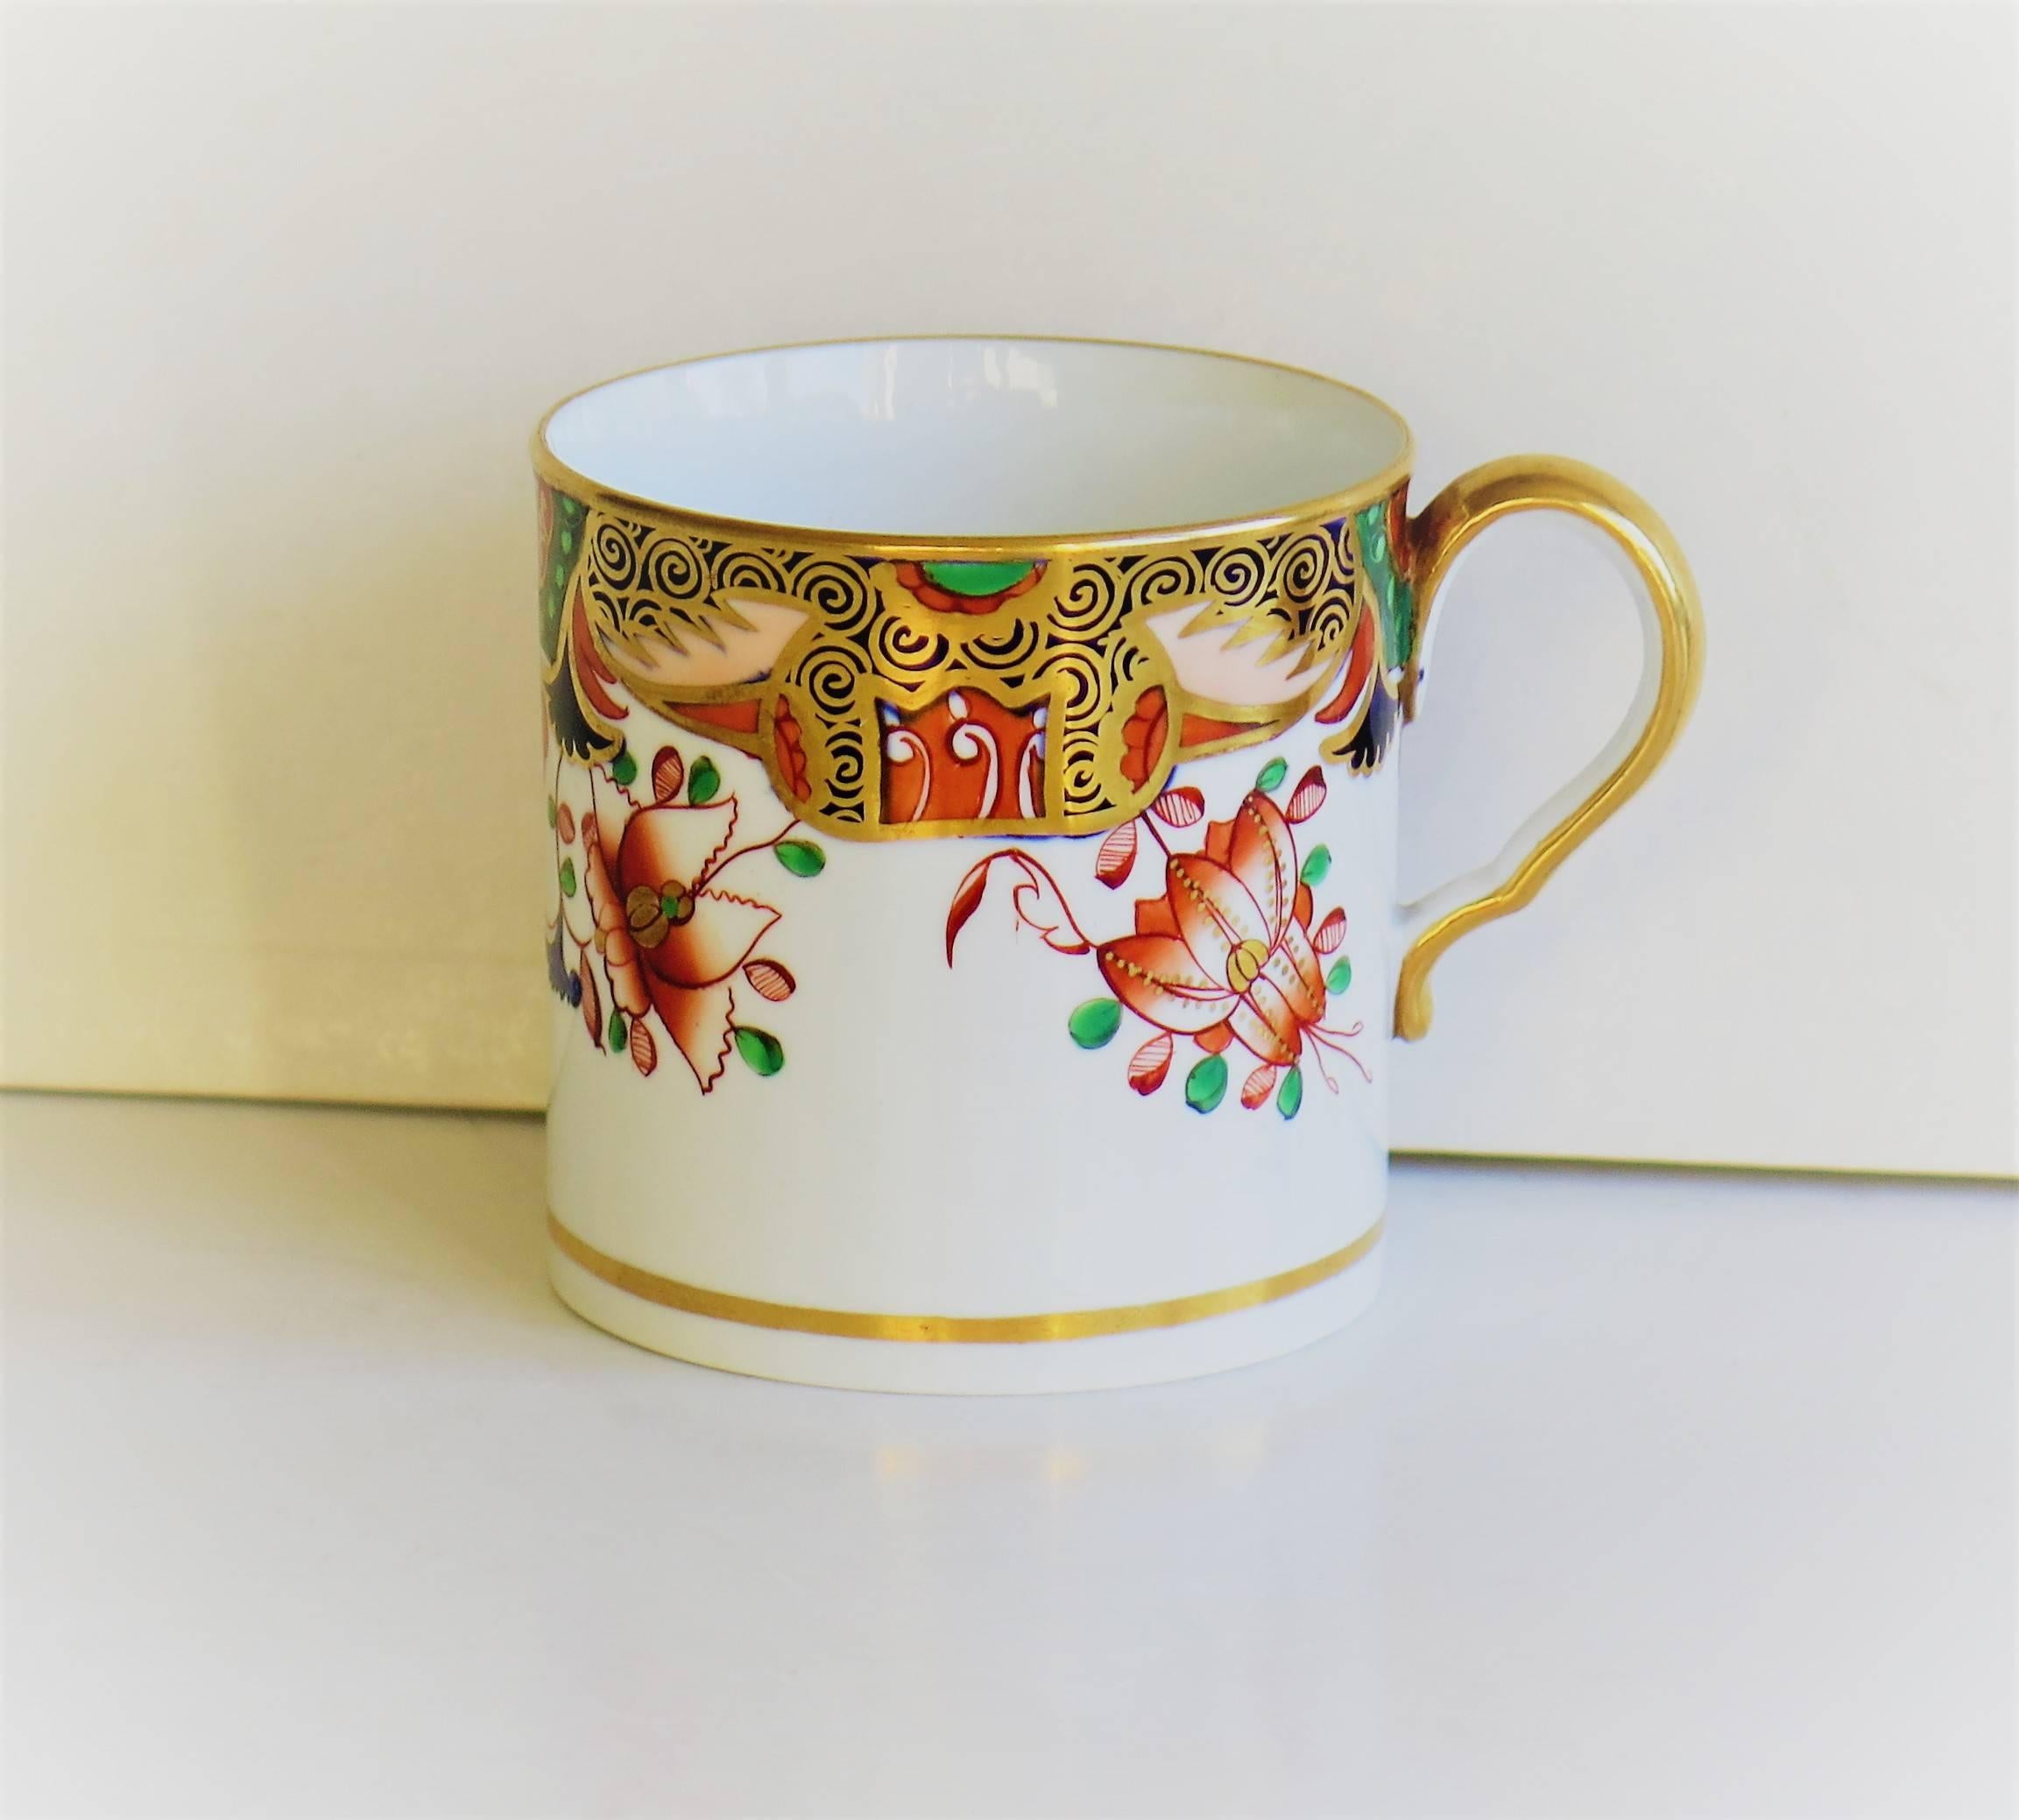 Dies ist ein schönes Beispiel für eine englische Porzellan-Kaffeekanne aus der Zeit Georgs III.:: hergestellt von Spode im frühen 19. Jahrhundert:: ca. 1810-1815:: mit der Aufschrift Spode auf dem Boden. 

Die Kanne ist nominell geradlinig und hat